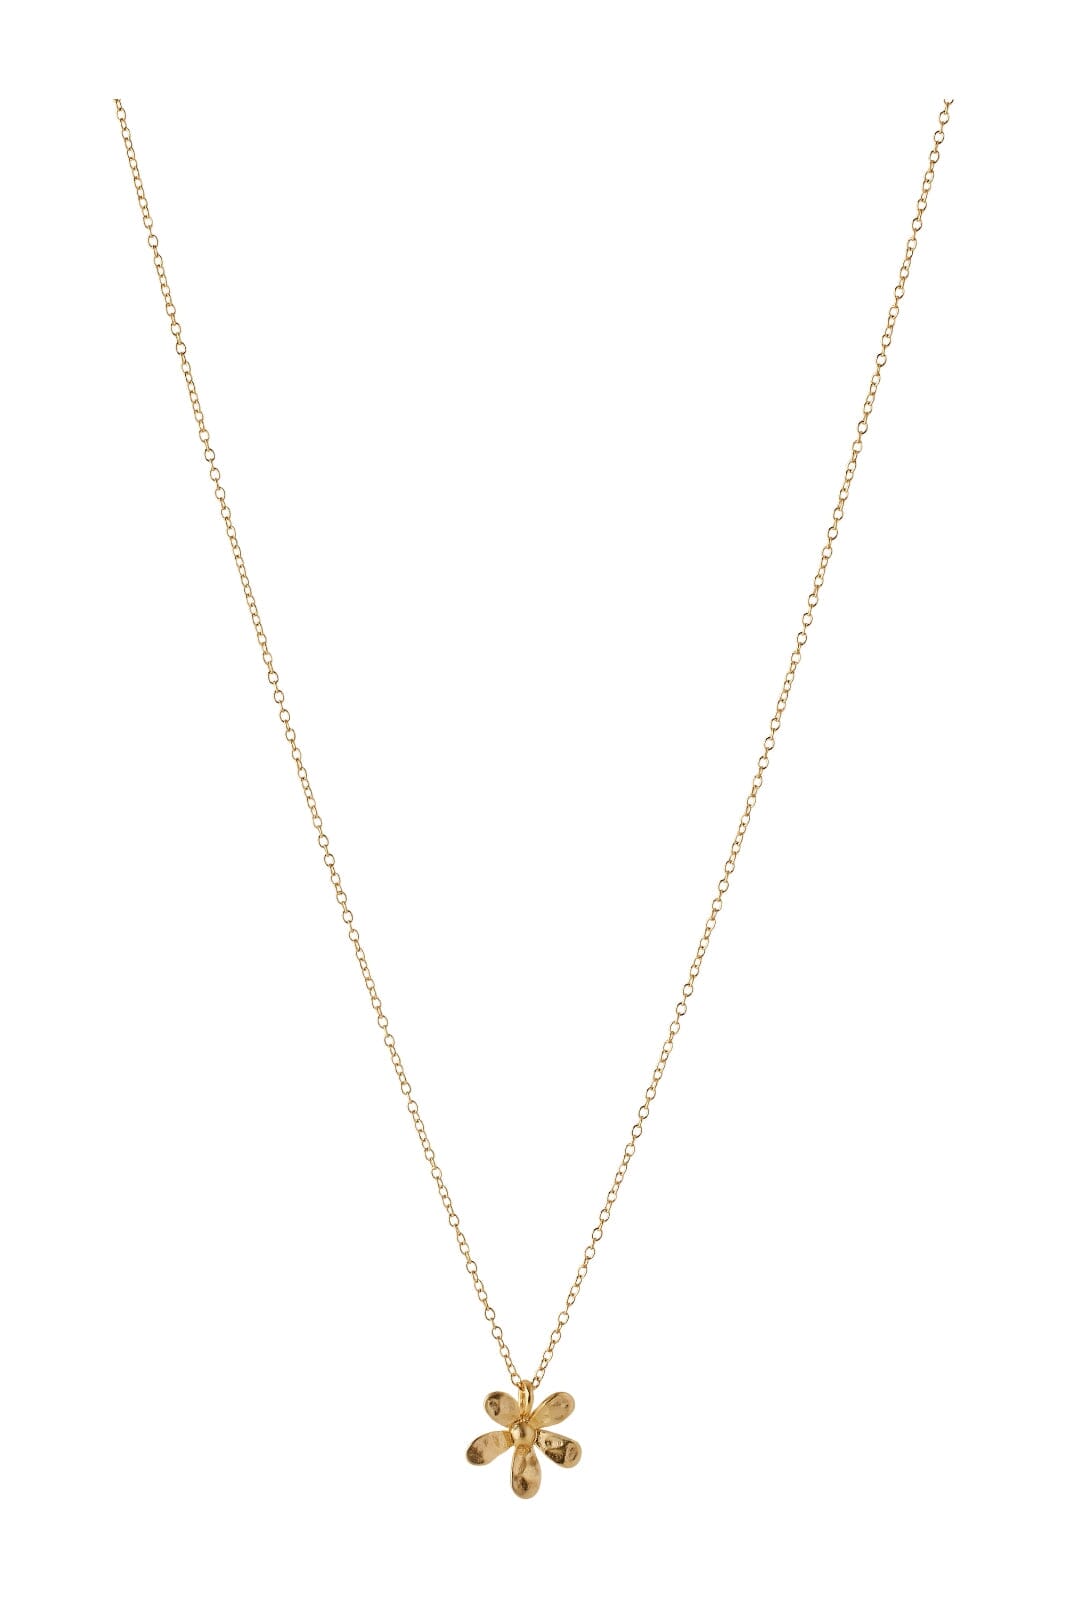 Pernille Corydon Jewellery - Wild Poppy Necklace - Goldplated Halskæder 